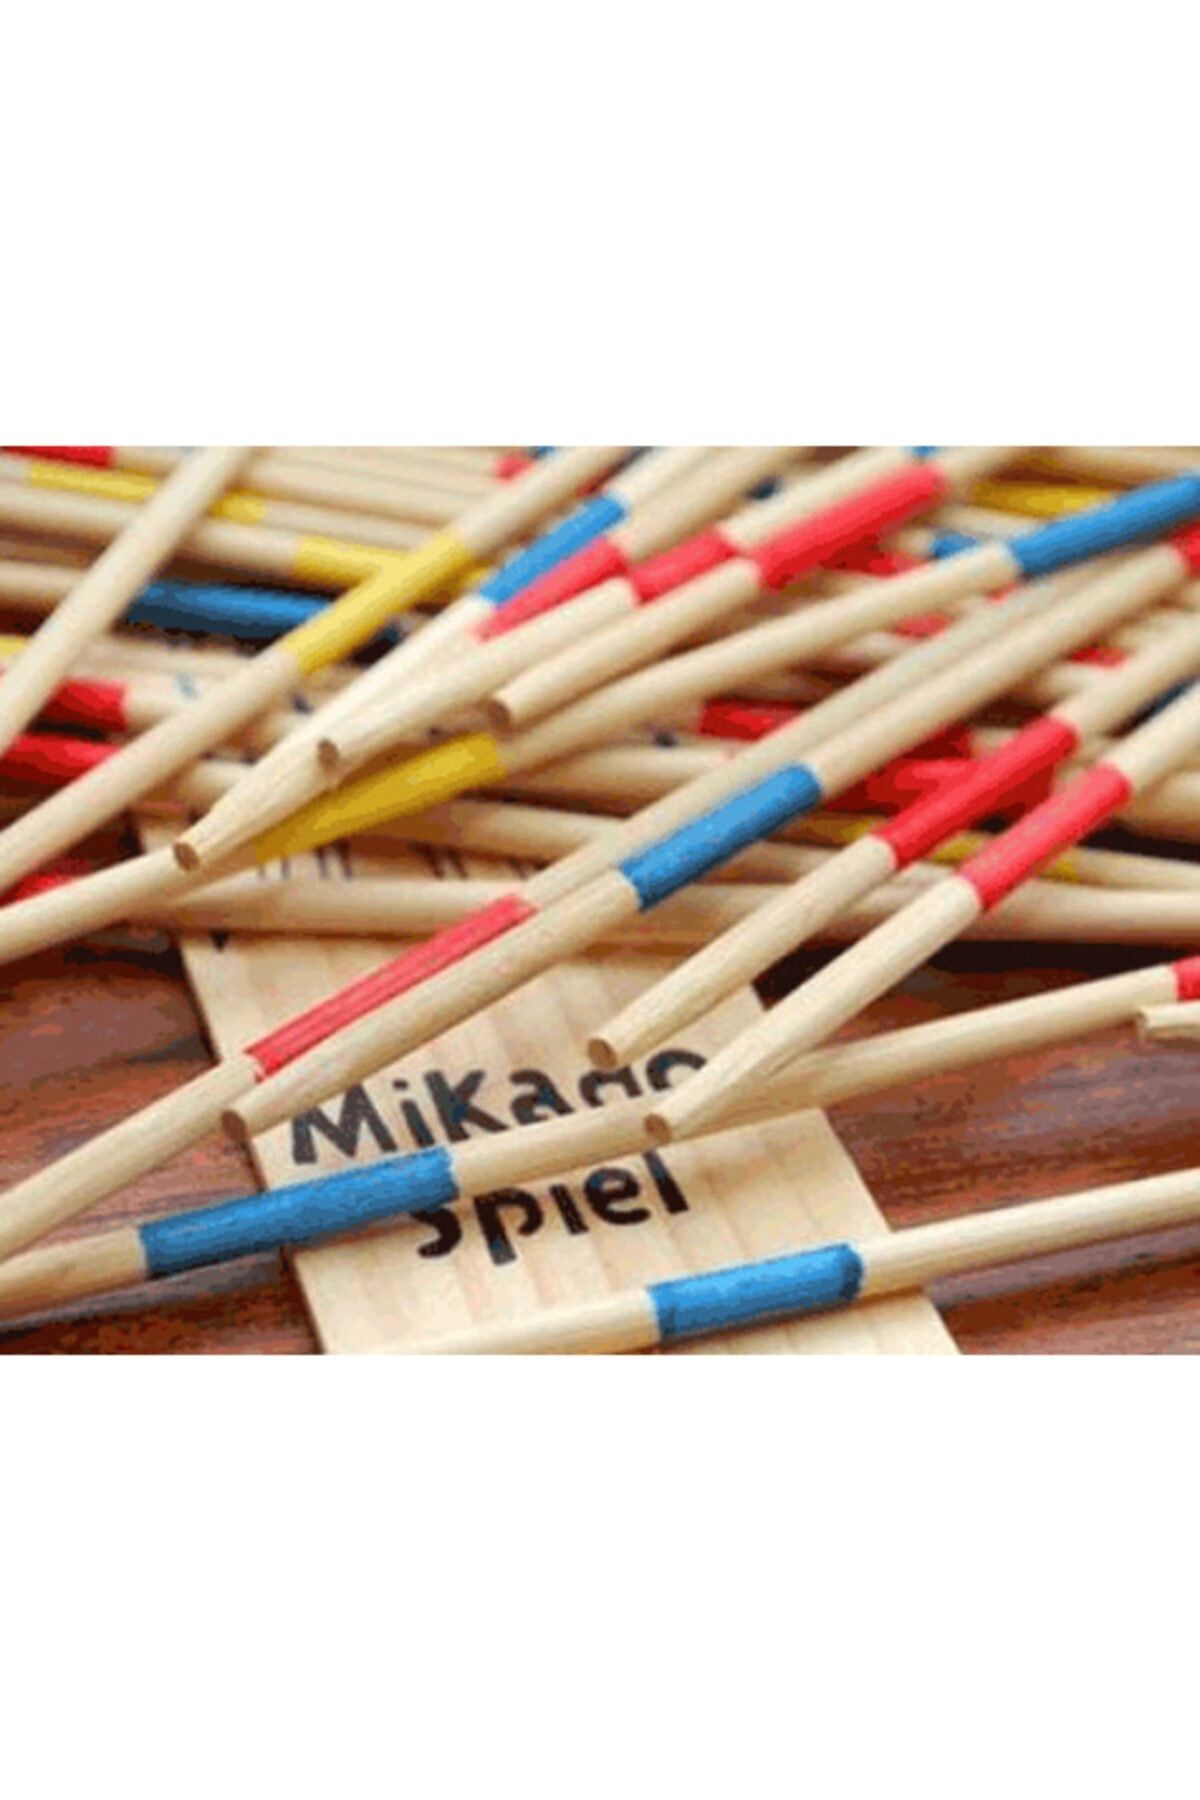 Çokuygunuz Eğlenceli Renkli Oyun Çubukları Mikado Spiel